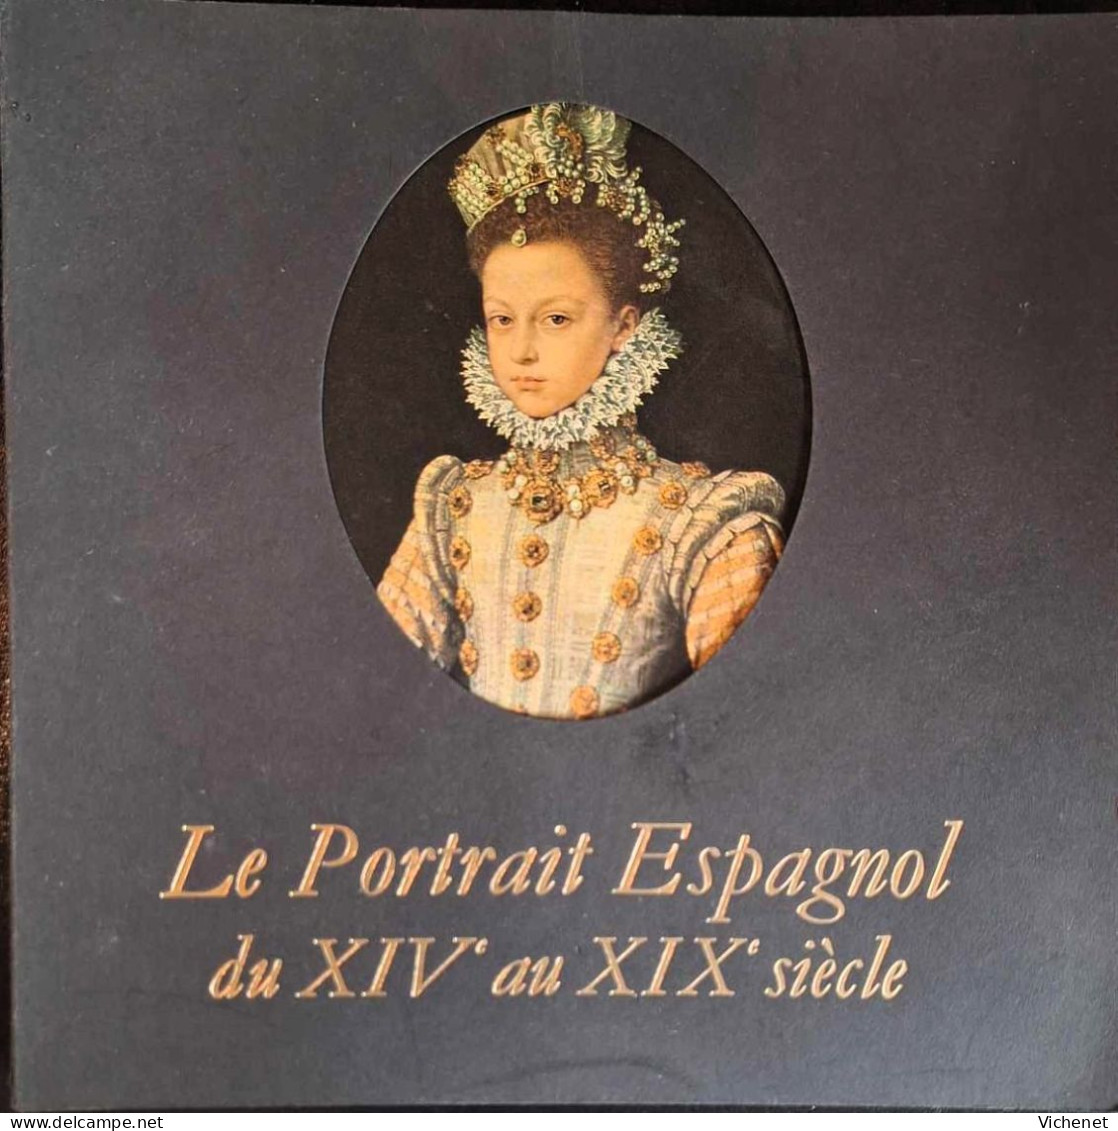 Le Portrait Espagnol Du XIVe Au XIXe Siècle - Catalogue D' Exposition  - Bruxelles - 1970 - Kunst